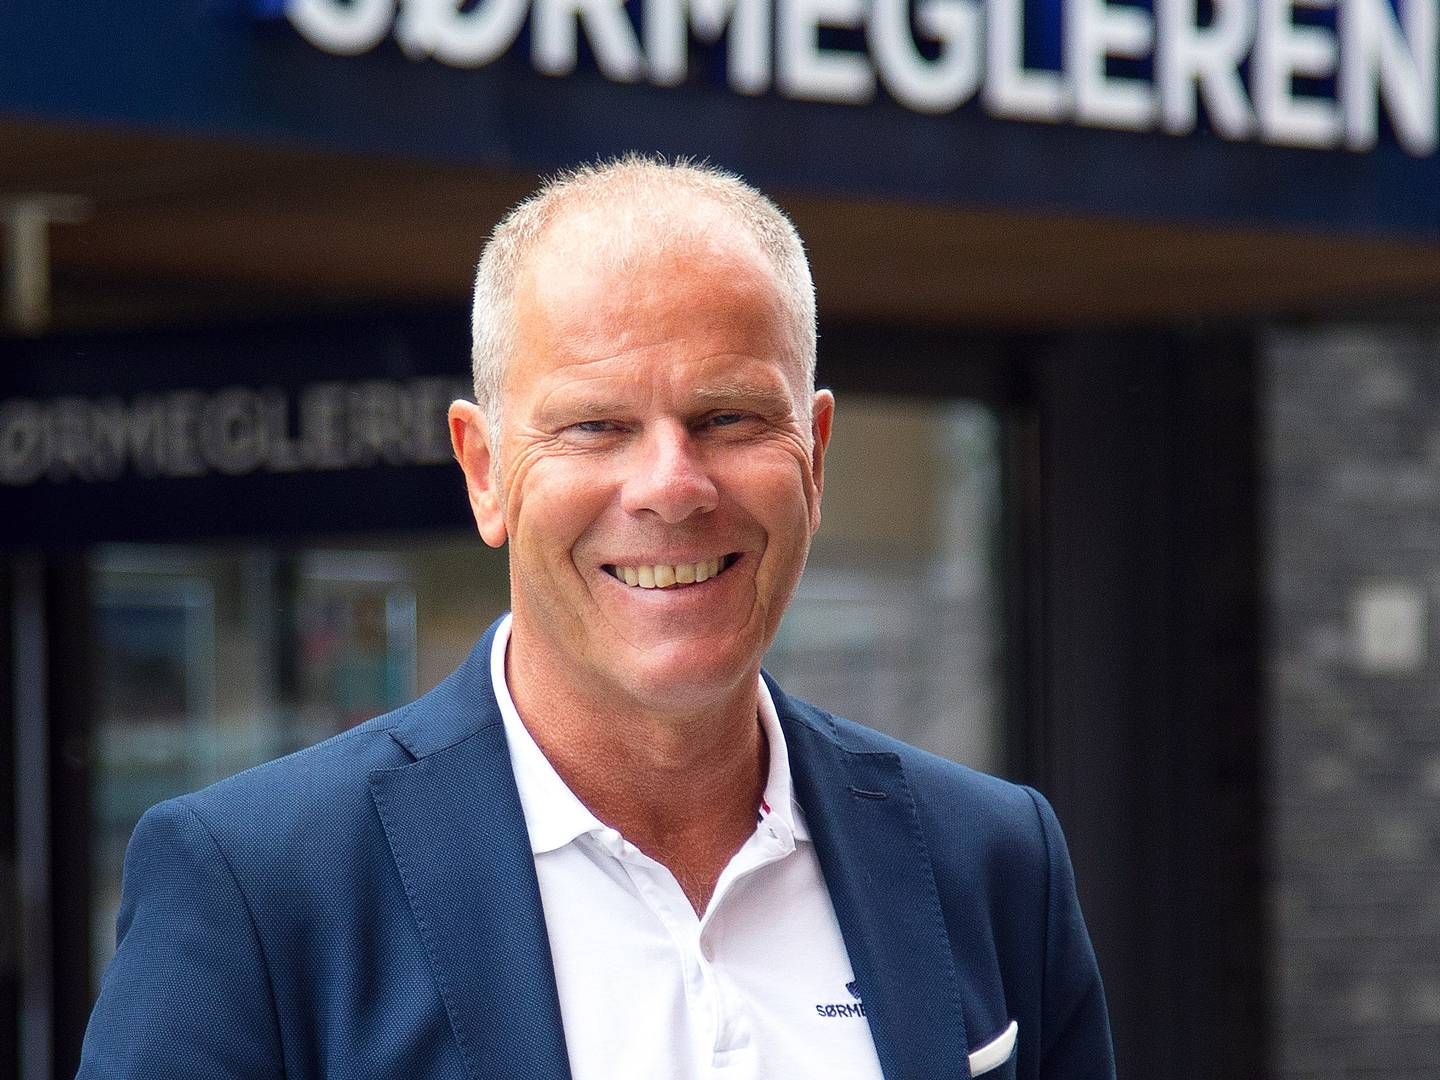 NOK: Øyvind Aasen er administrerende direktør i Sørmegleren. Etter to rekordpregede år øyner meglertoppen tegn til nedkjøling i hyttemarkedet. | Foto: Sørmegleren